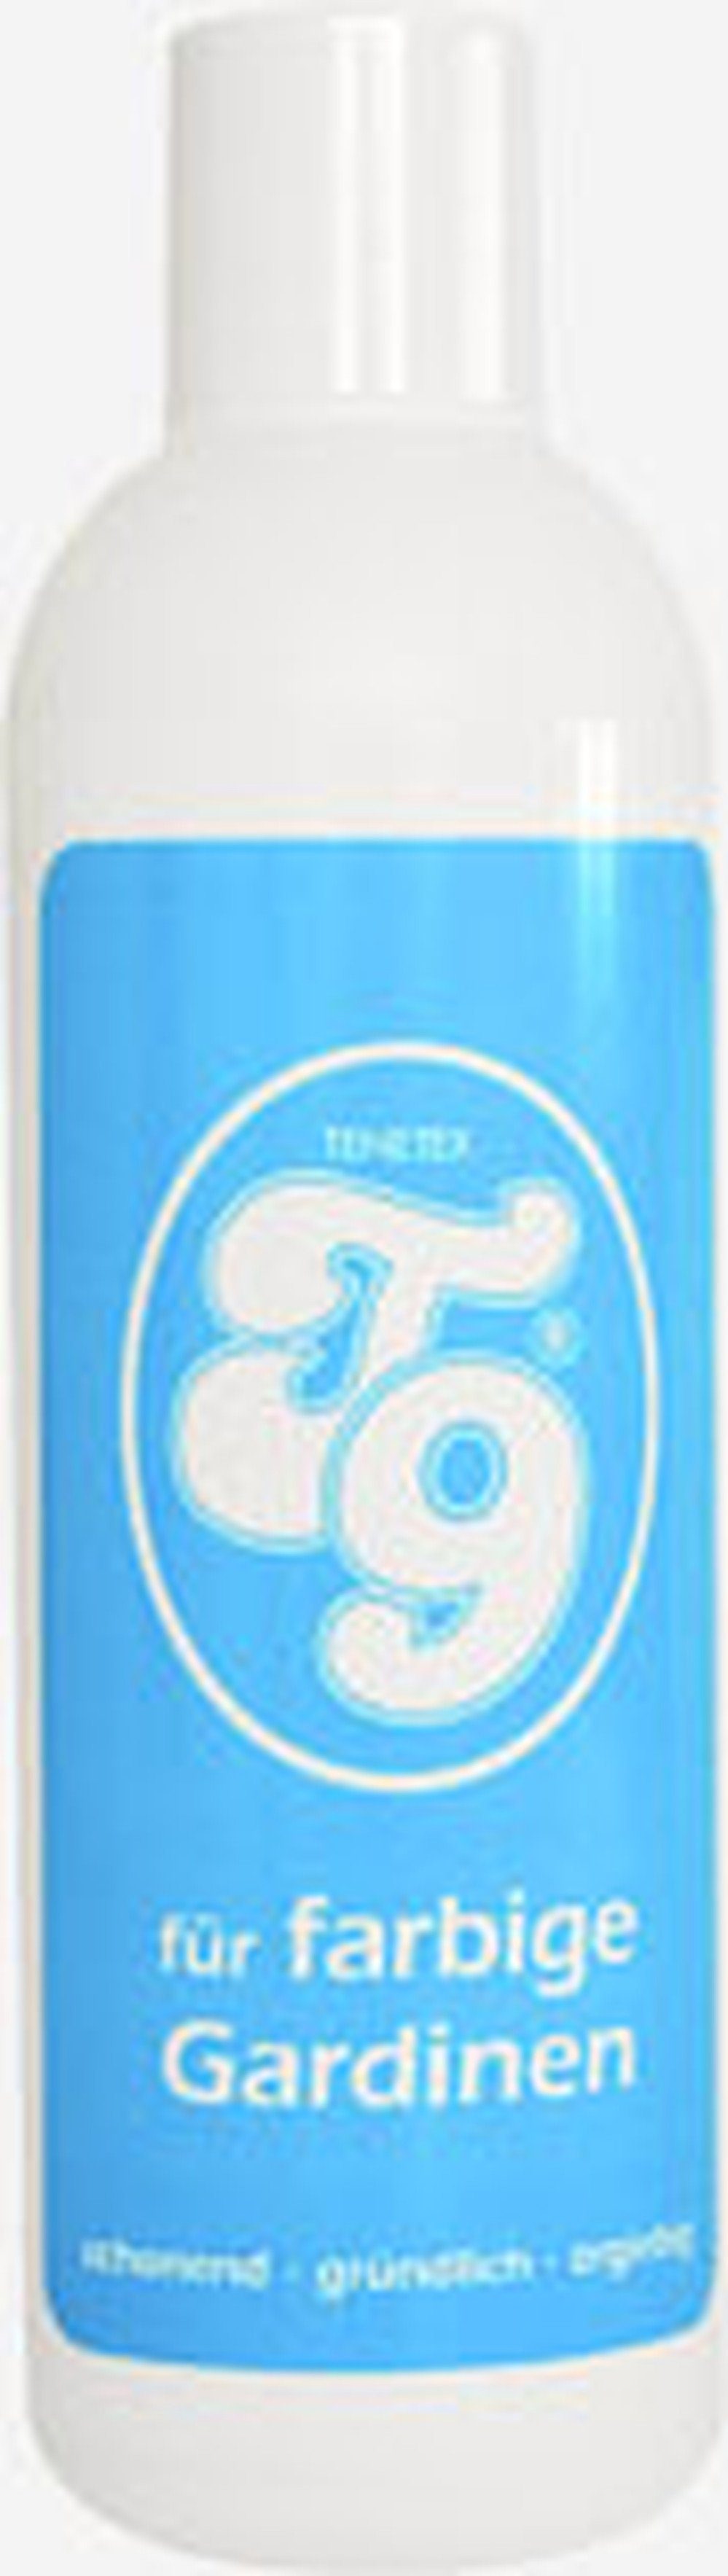 Intervall T 9 Tenetex Spezialpflege für farbige Gardinen 250 g Spezialwaschmittel